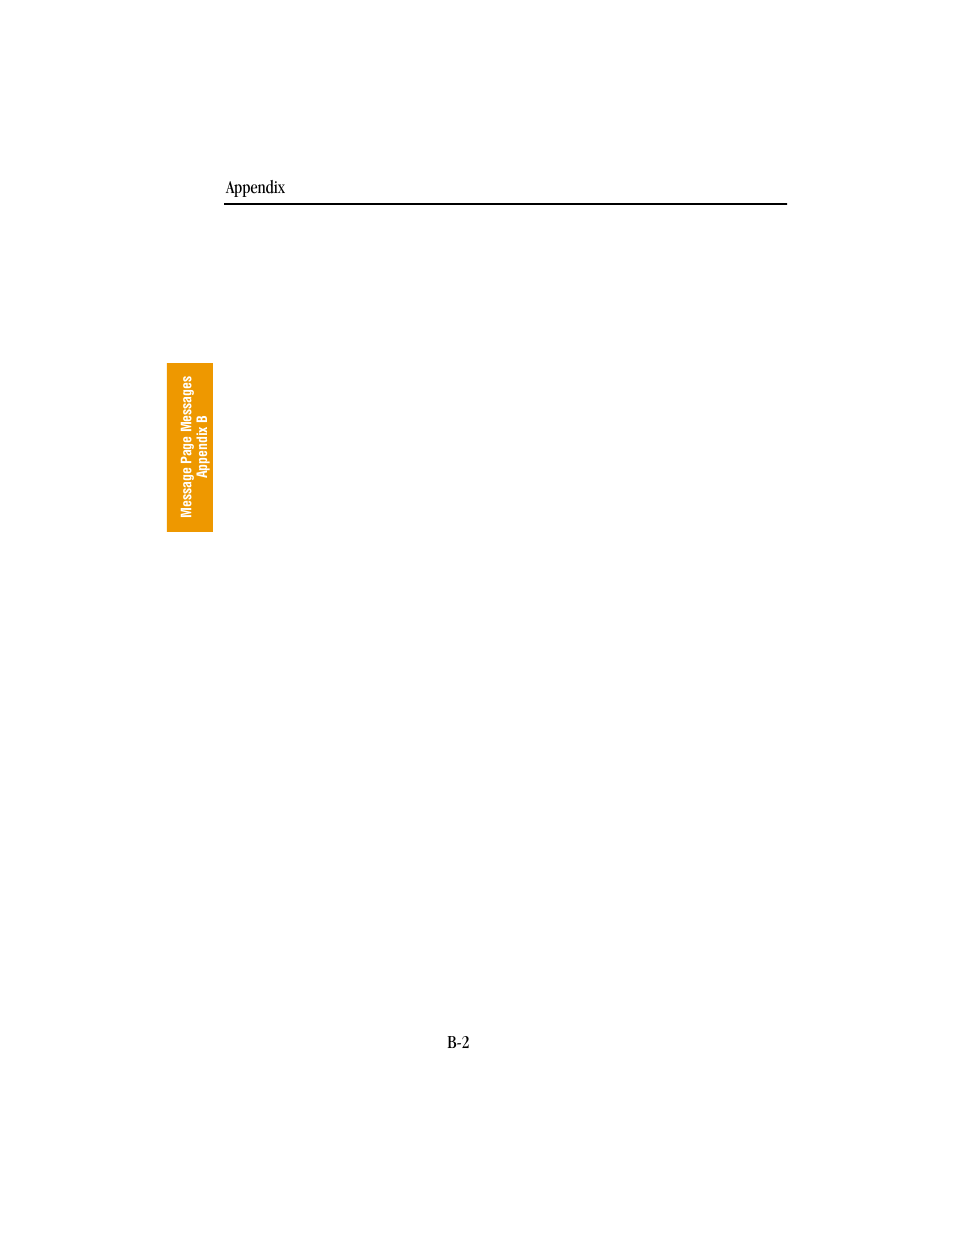 BendixKing KLN 89B - Pilots Guide User Manual | Page 201 / 246